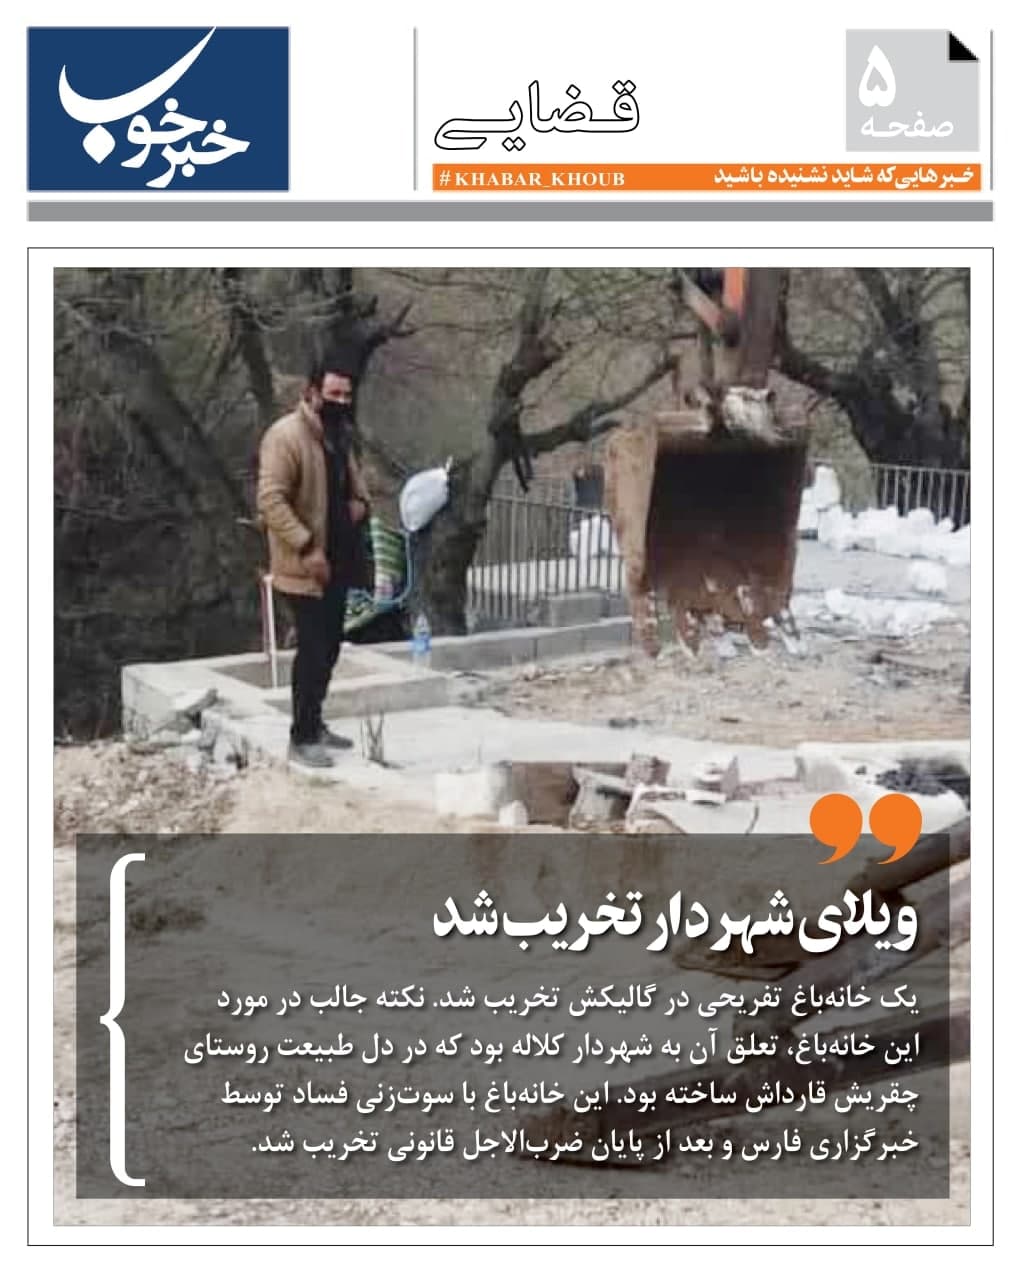  ویلای شهردار تخریب شد+عکس